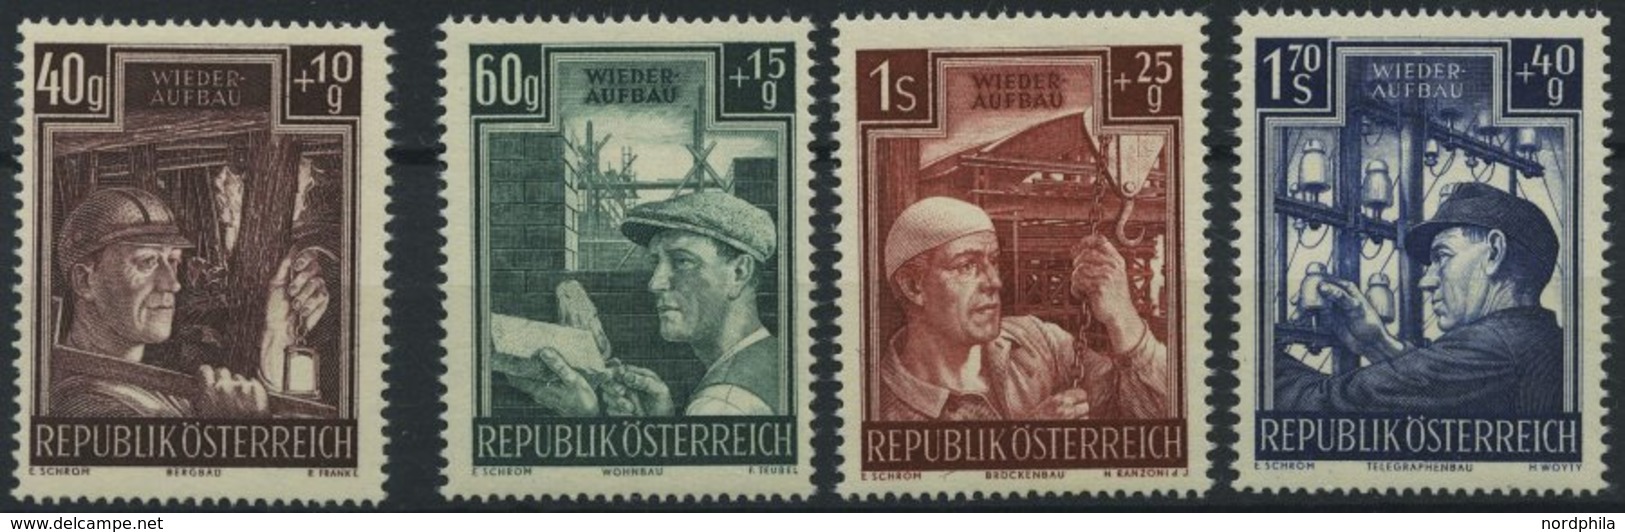 ÖSTERREICH 960-63 **, 1951, Wiederaufbau, Prachtsatz, Mi. 80.- - Oblitérés